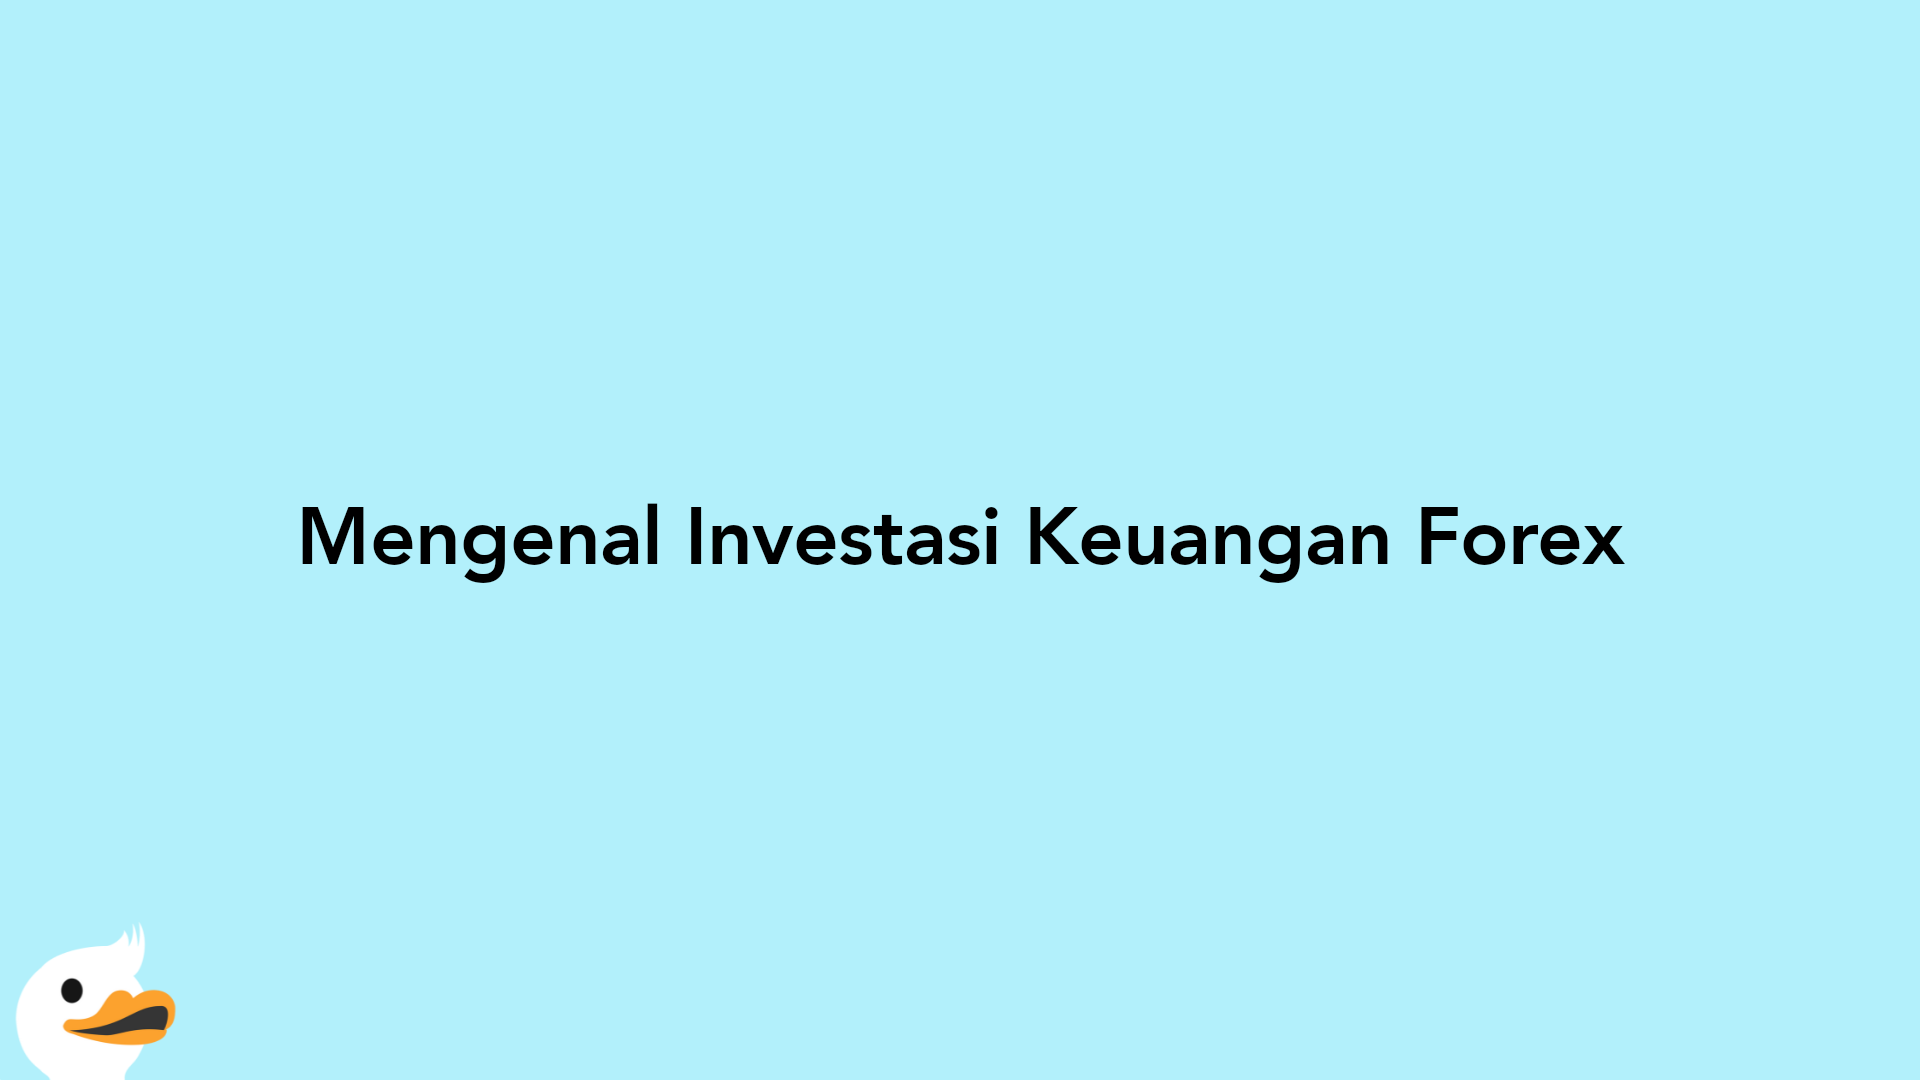 Mengenal Investasi Keuangan Forex